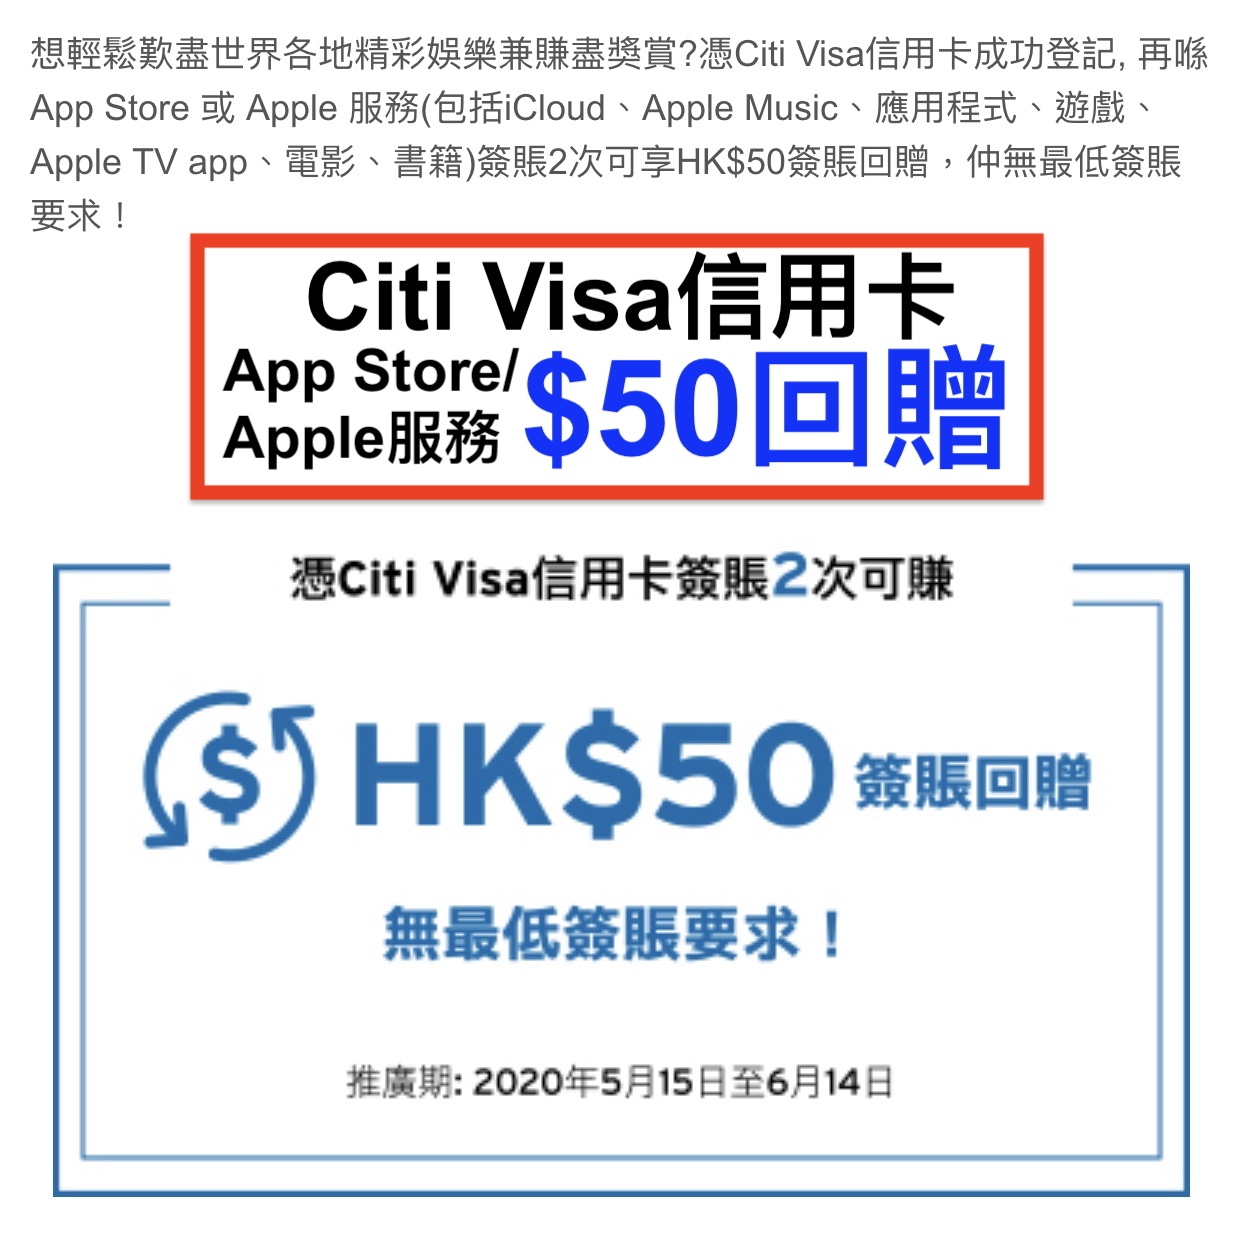 Citi Visa信用卡App Store 或 Apple 服務HK$50簽賬回贈！必賺！只限4,500首名登記！